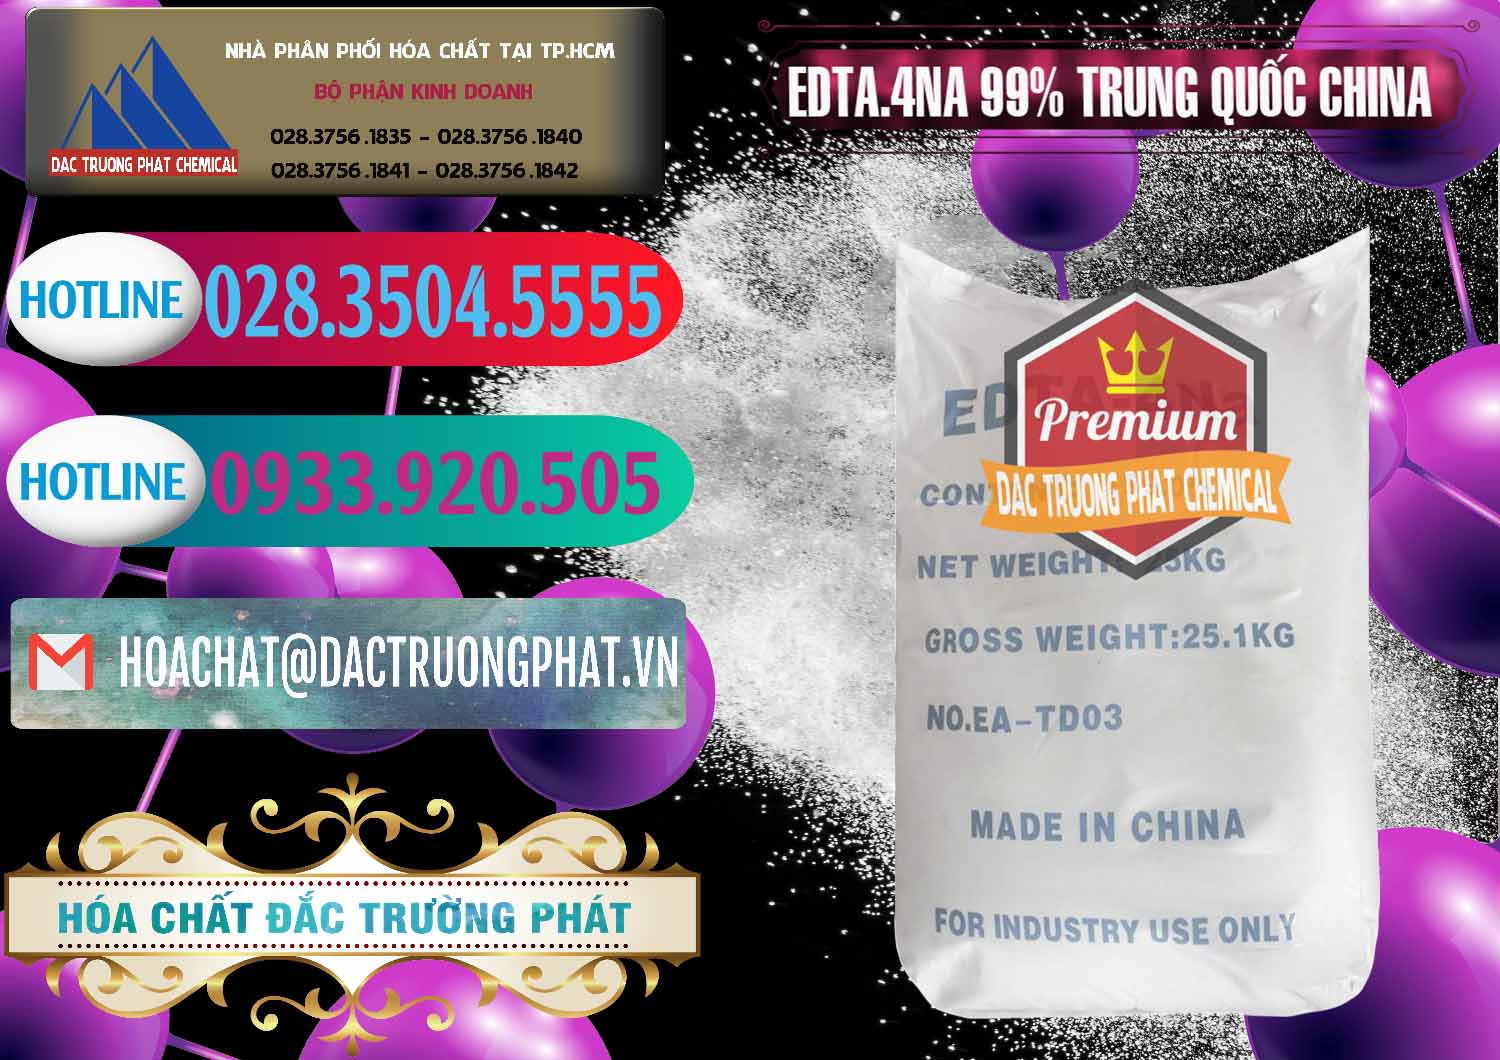 Nơi chuyên cung cấp _ bán EDTA.4NA - EDTA Muối 99% Trung Quốc China - 0292 - Cung cấp & phân phối hóa chất tại TP.HCM - truongphat.vn